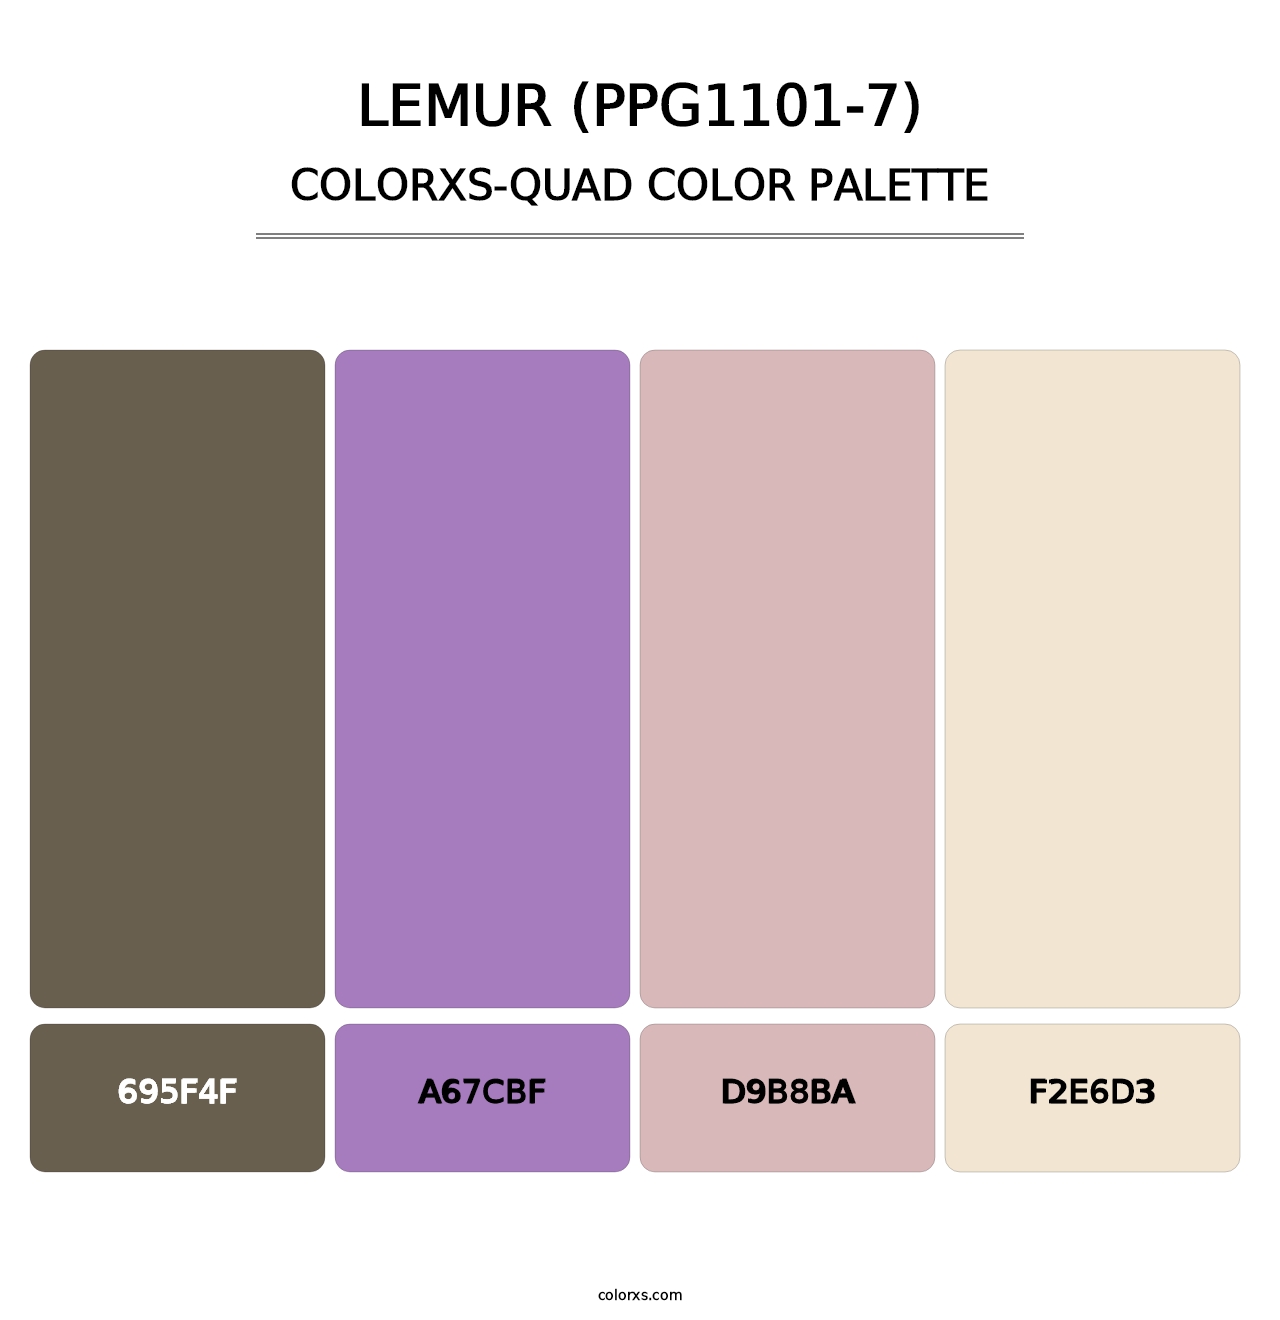 Lemur (PPG1101-7) - Colorxs Quad Palette